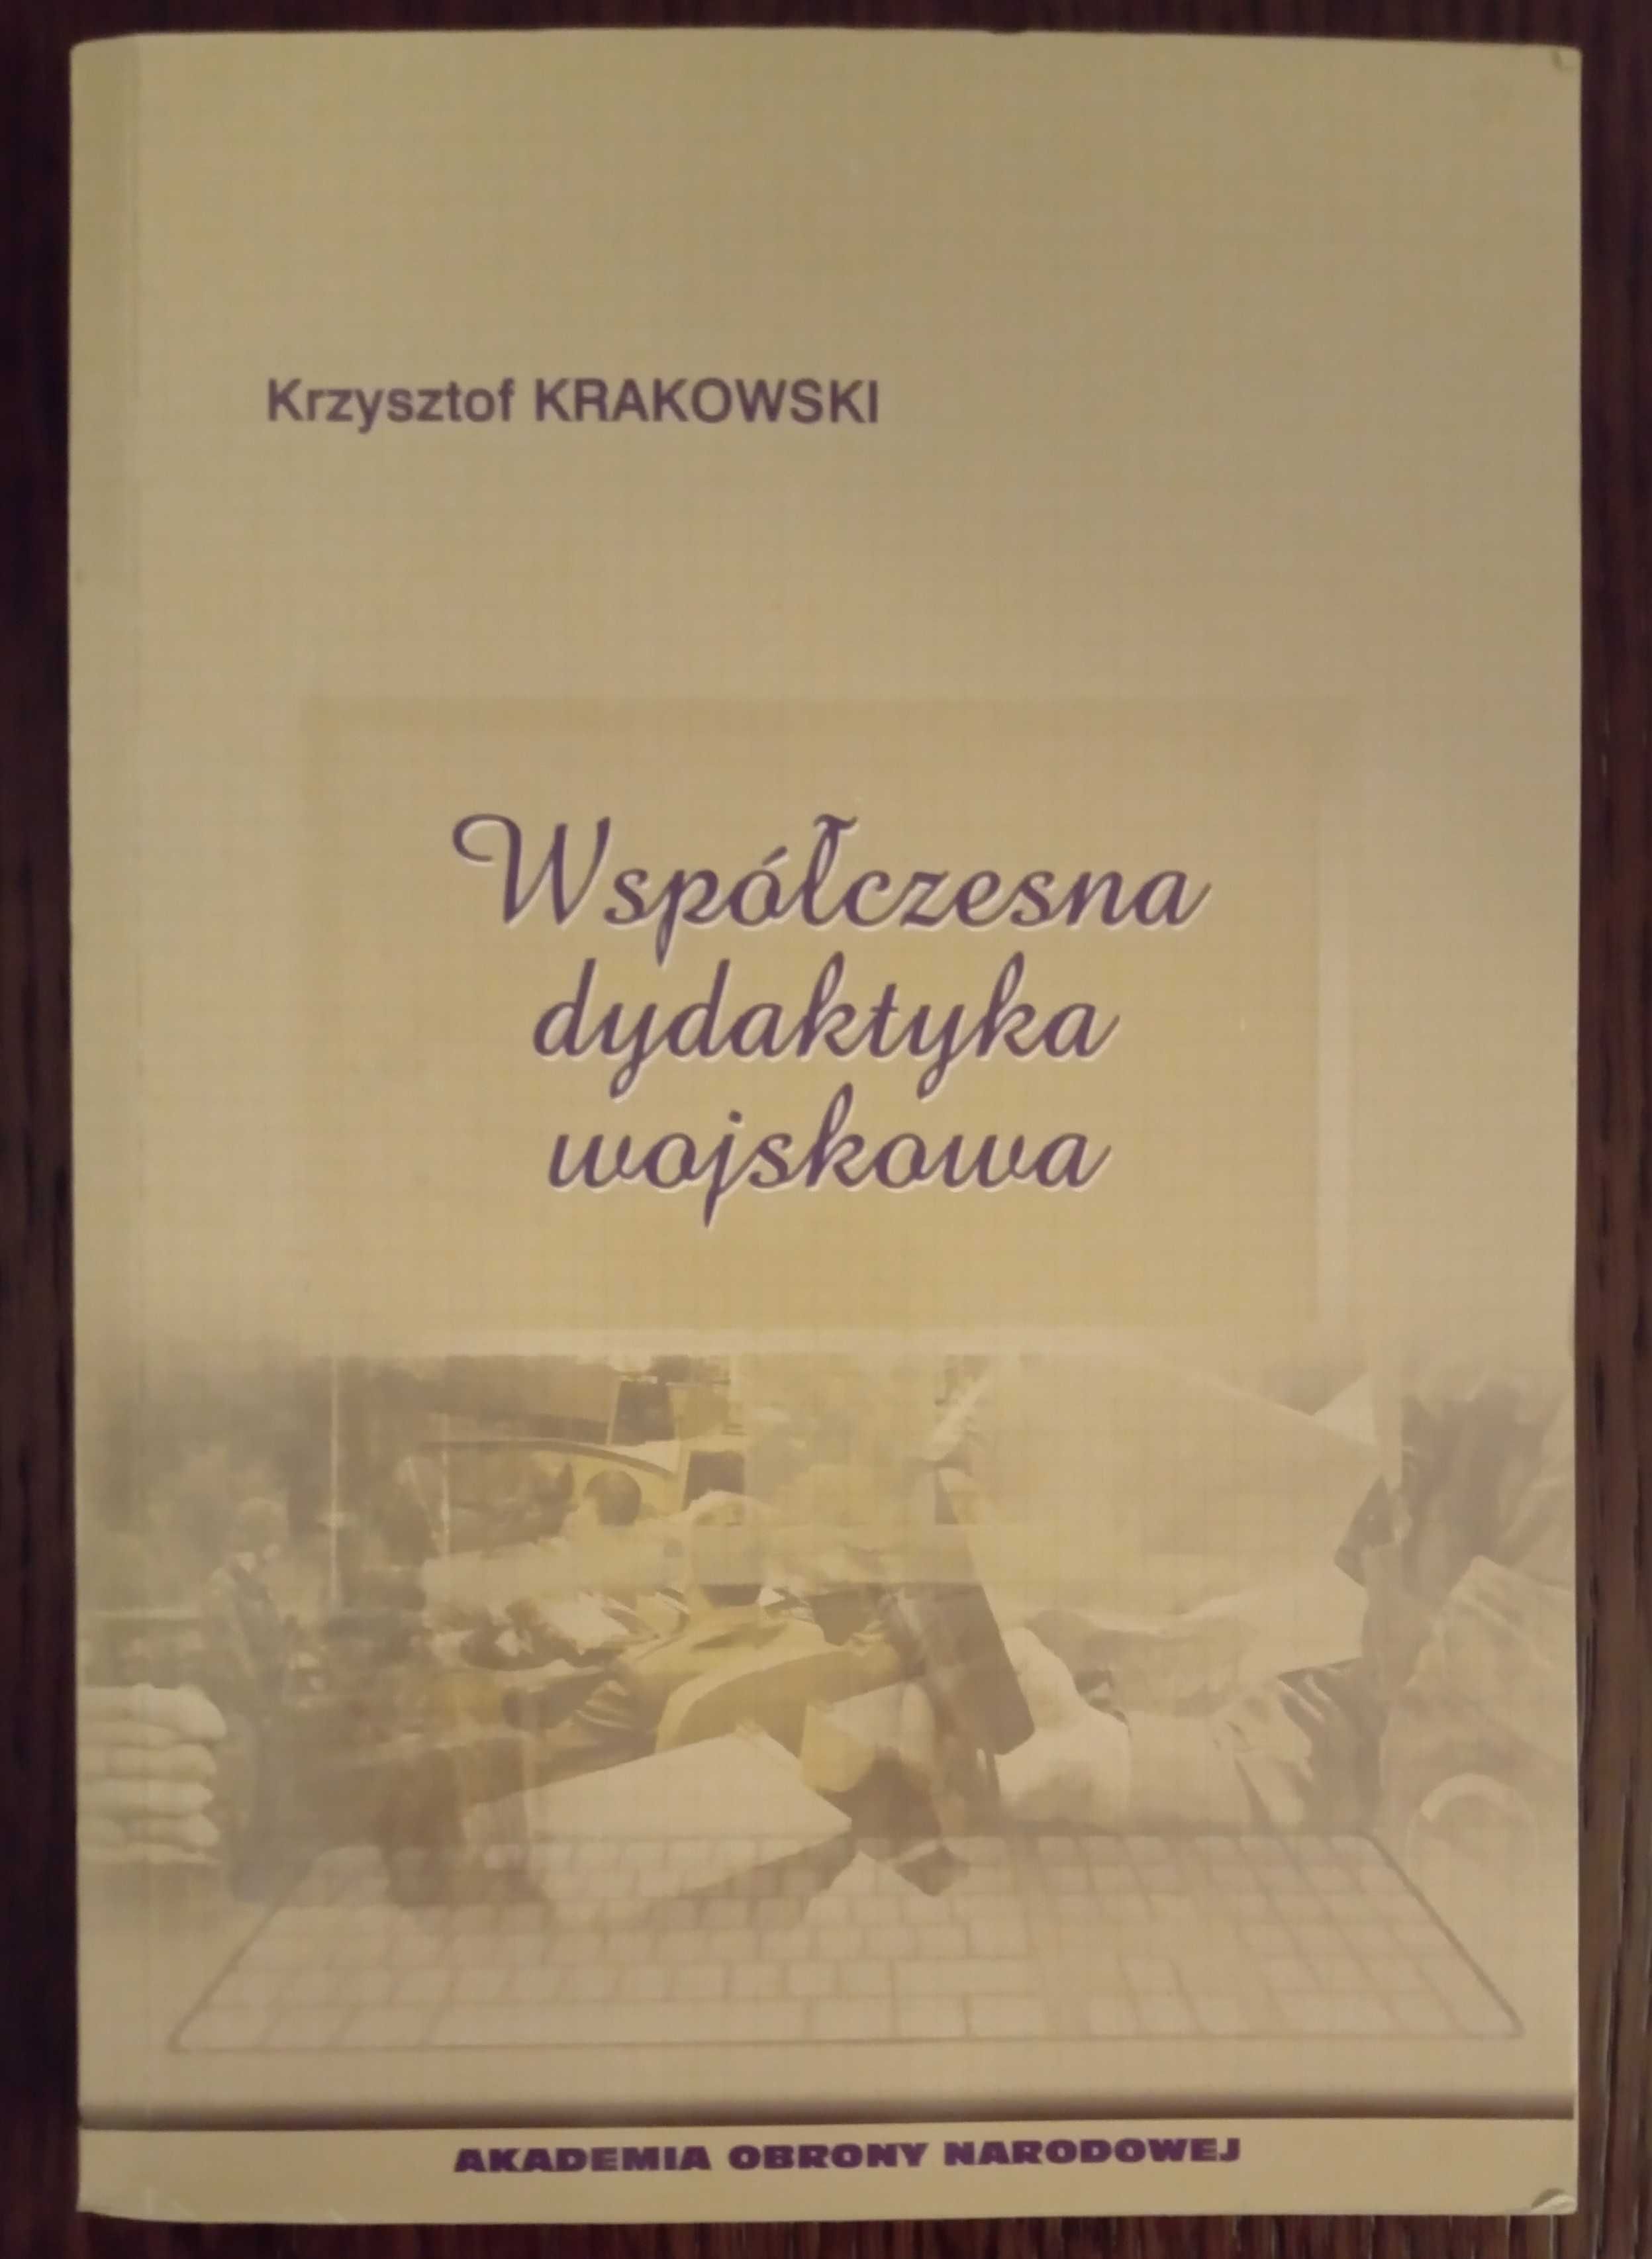 Współczesna dydaktyka wojskowa - Krzysztof Krakowski